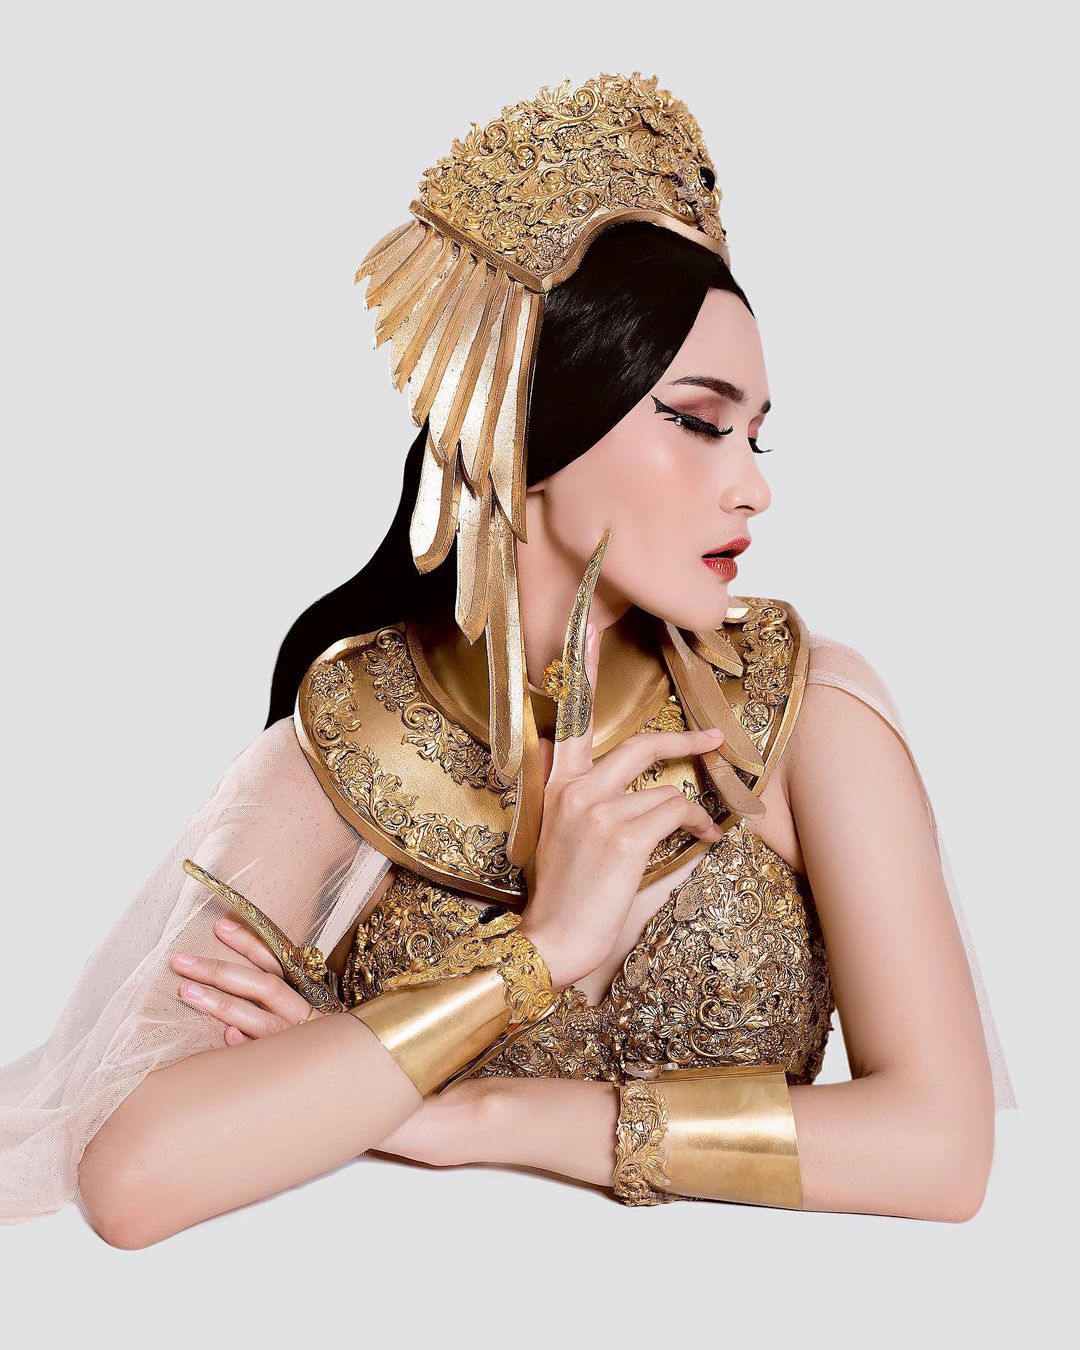 Miss eco indonesia 2021